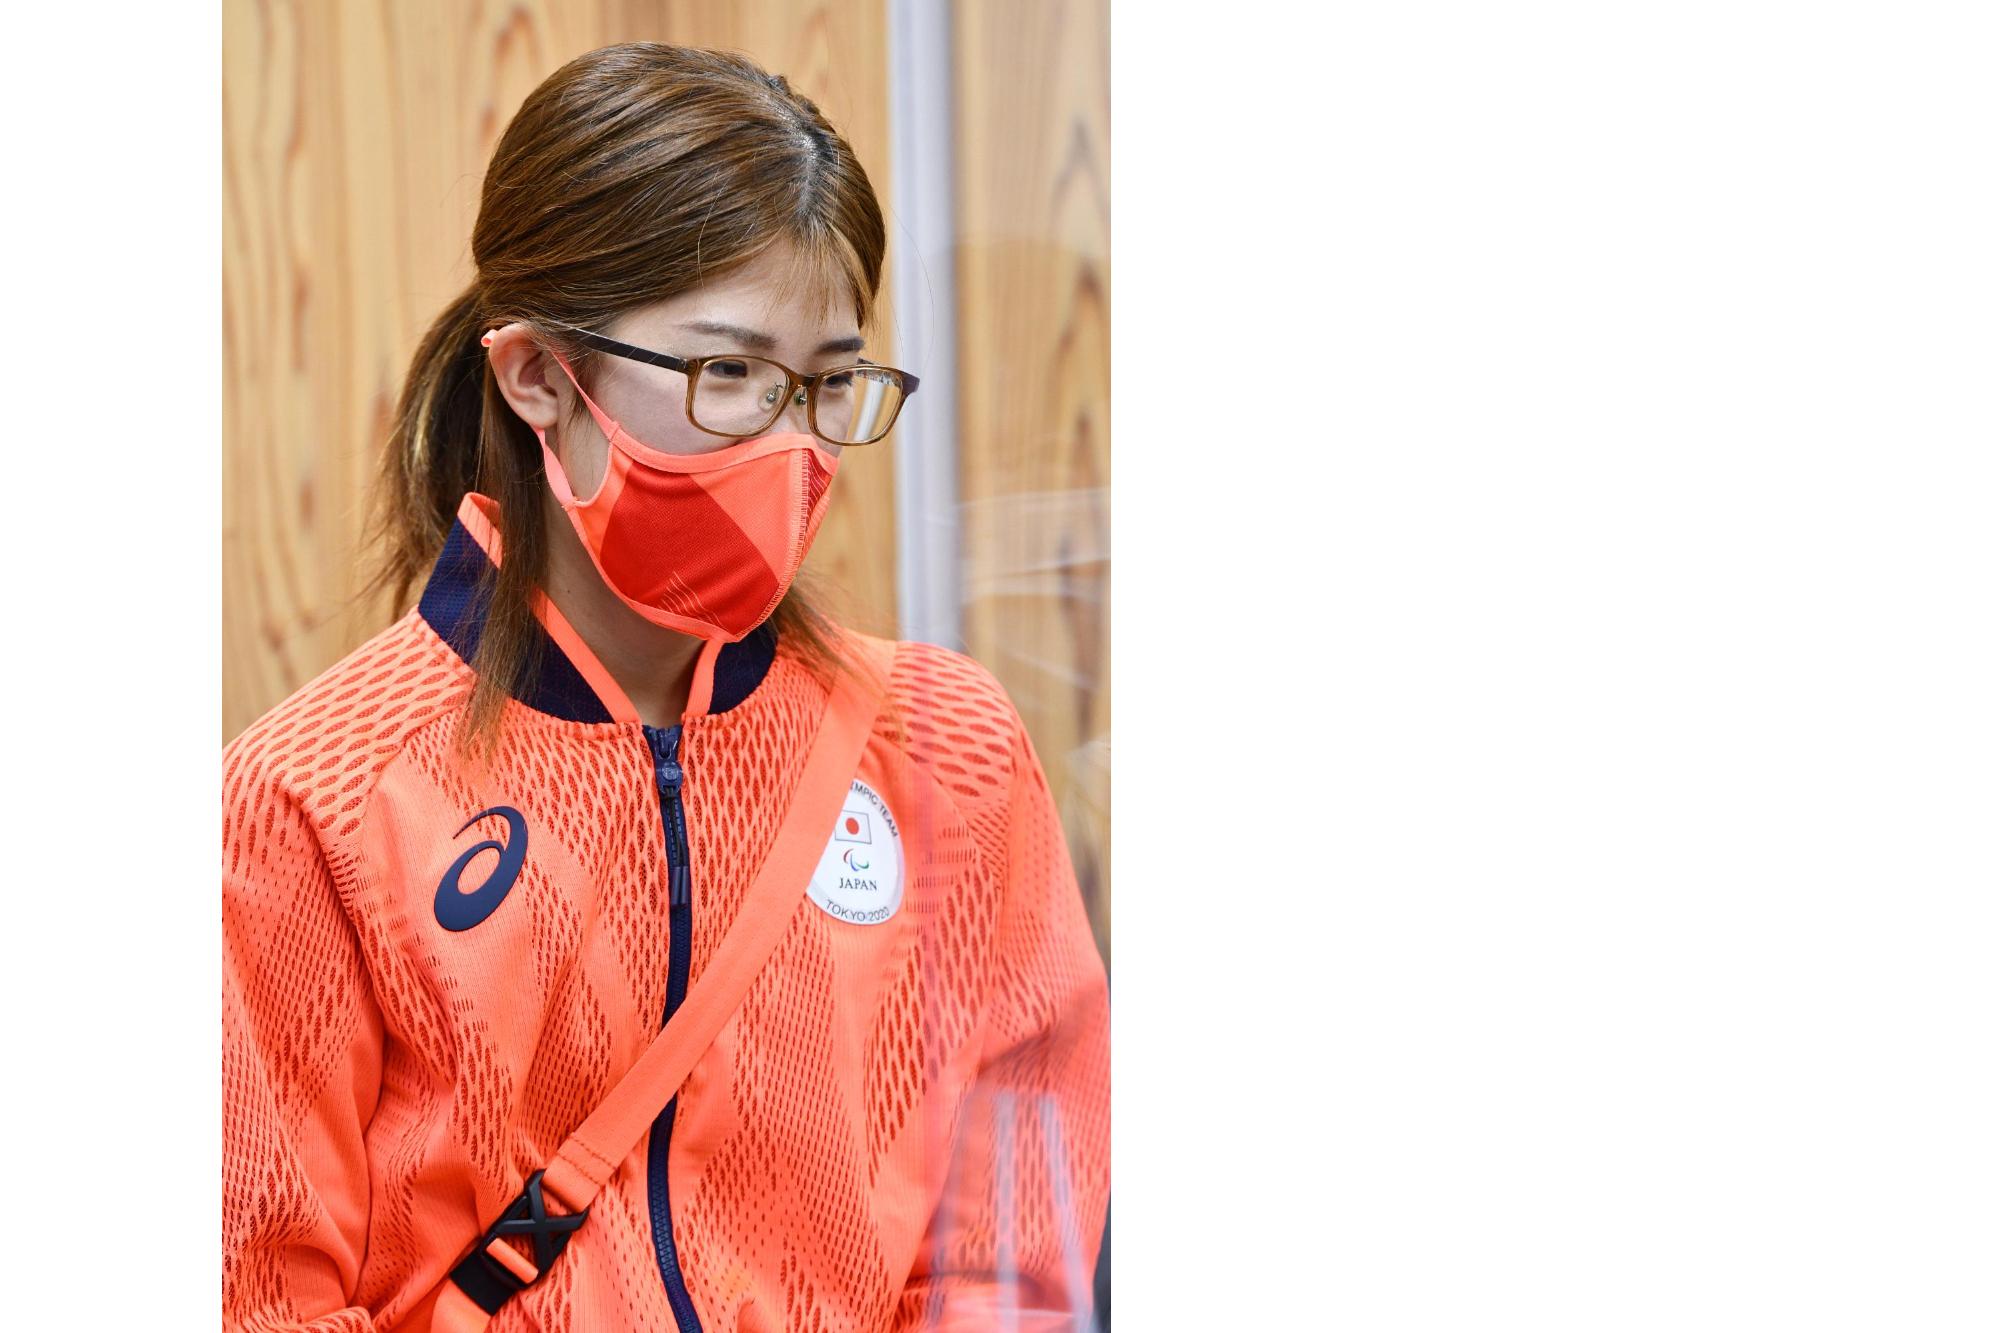 東京2020パラリンピックに出場した古屋杏樹選手が、市役所に表敬訪問してくださった際の写真